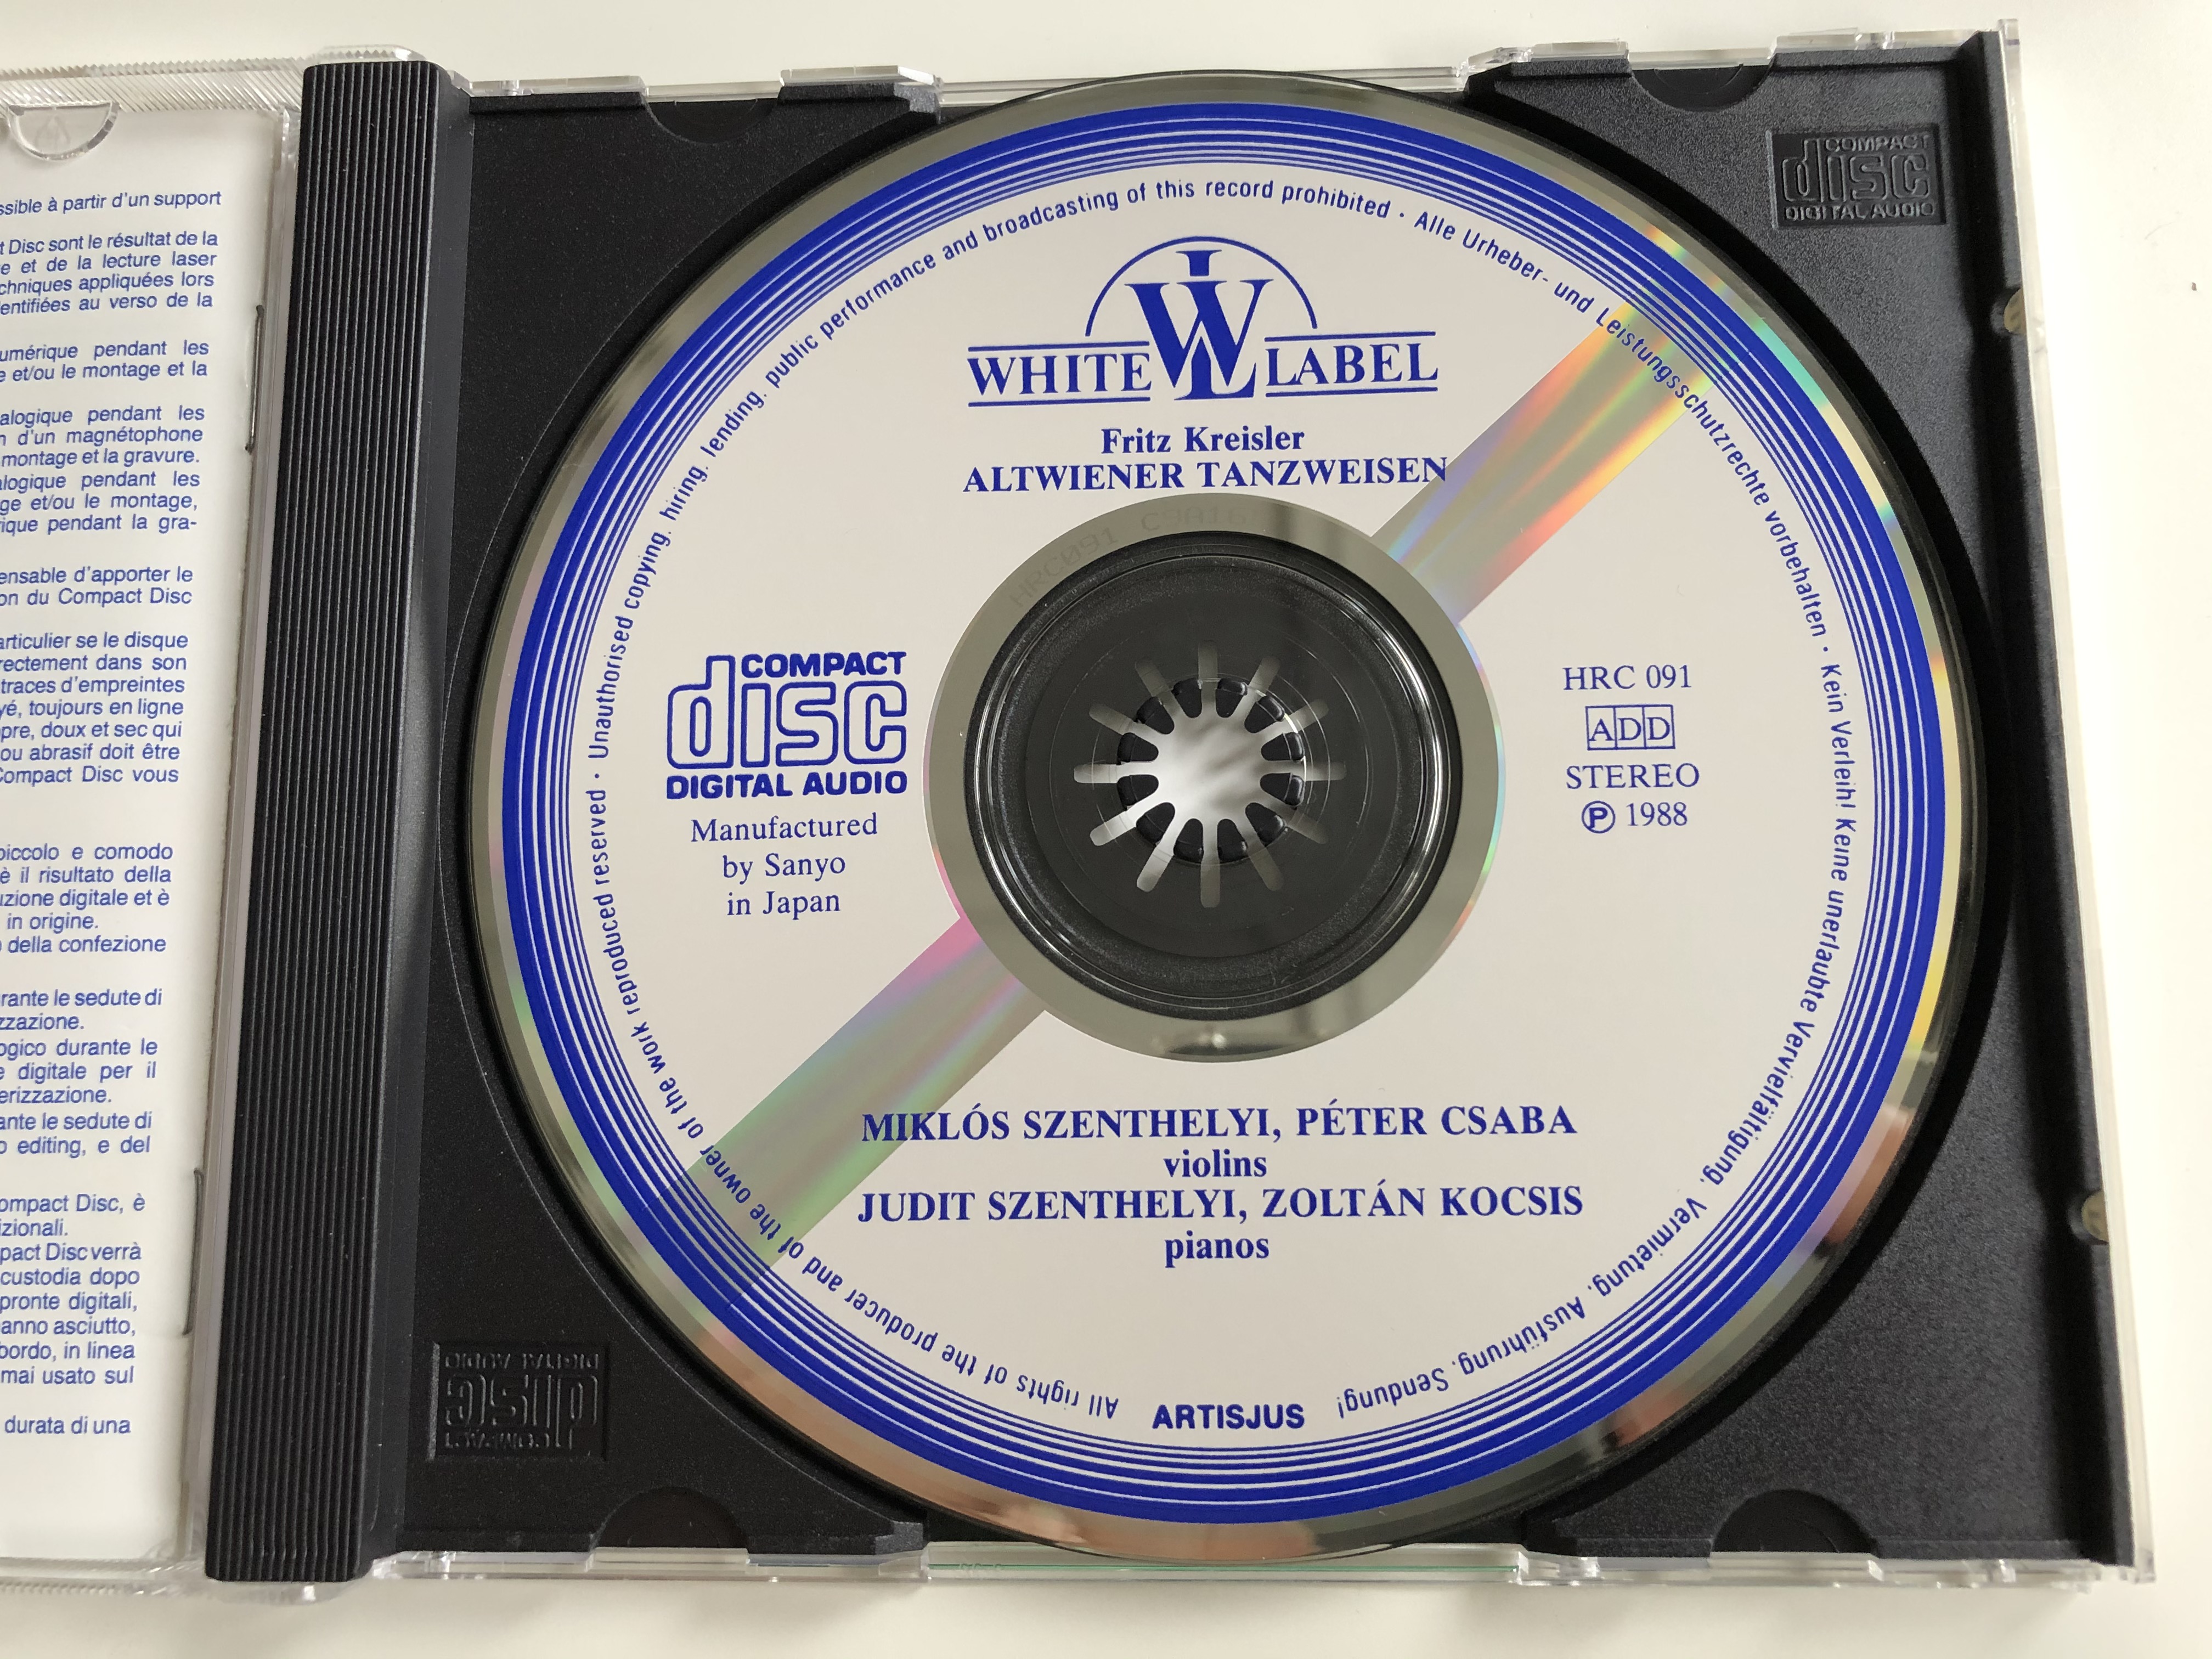 altwiener-tanzweisen-fritz-kreisler-miklos-szenthelyi-peter-csaba-violins-judit-szenthelyi-zoltan-kocsis-pianos-hungaroton-audio-cd-1988-stereo-hrc-091-3-.jpg